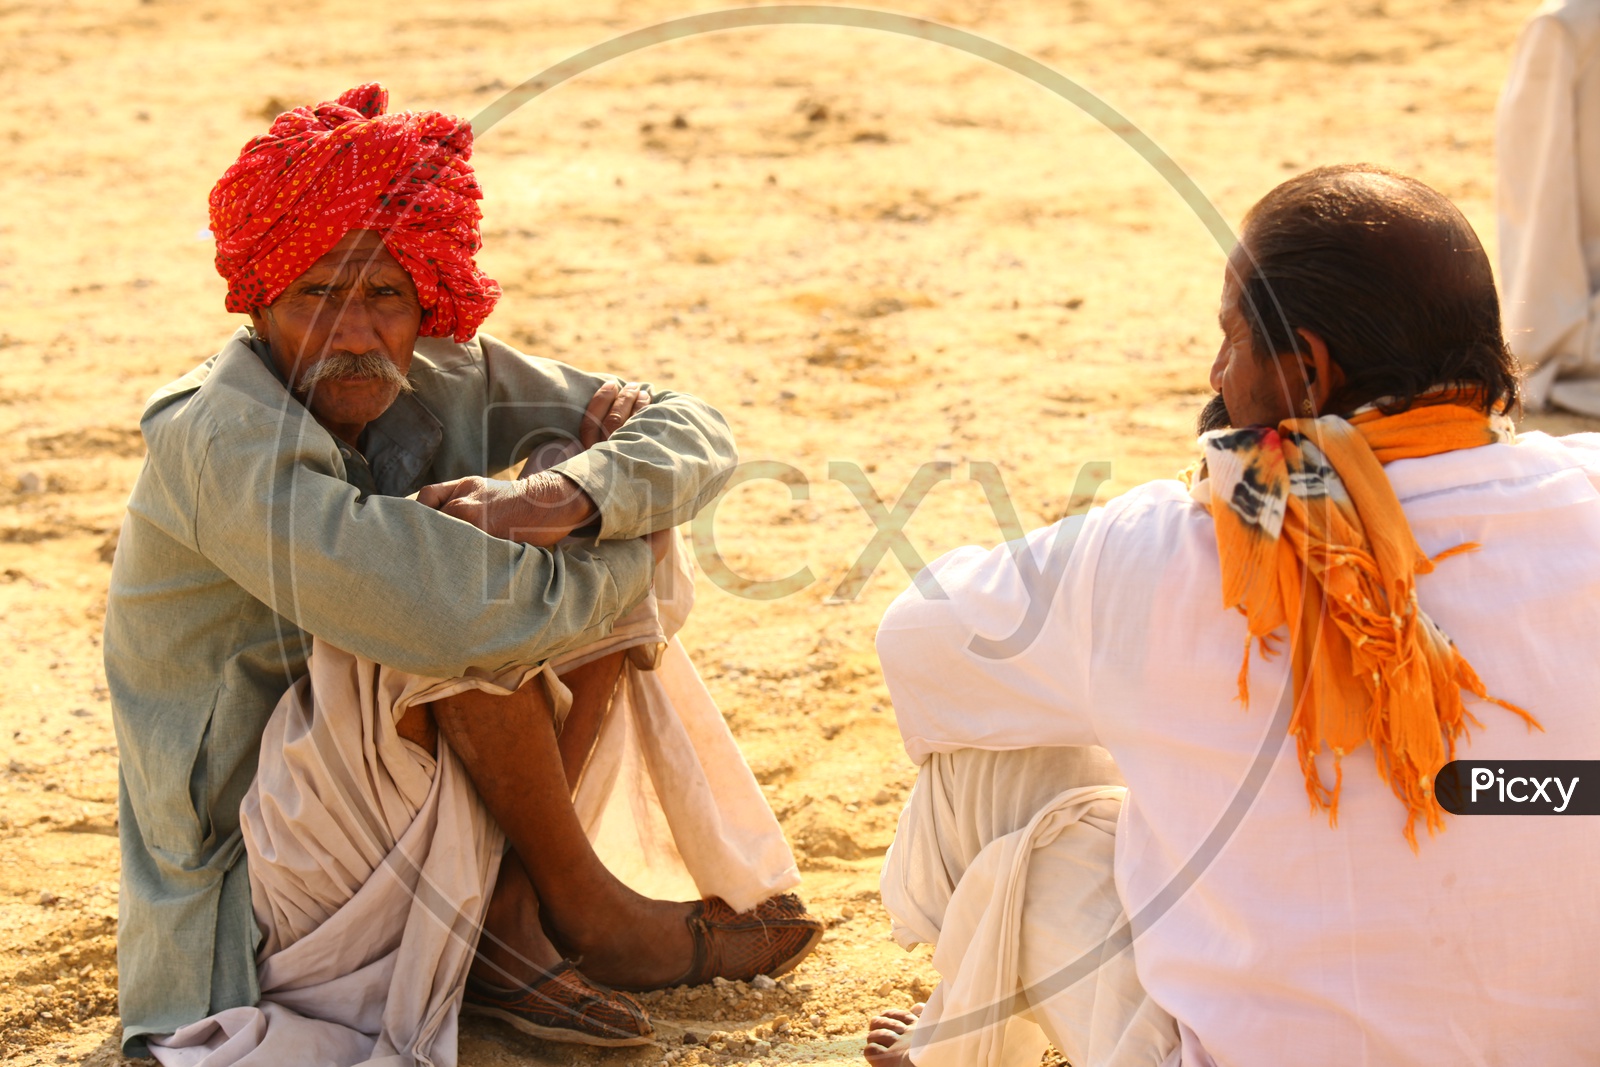 Rajasthani men in the desert